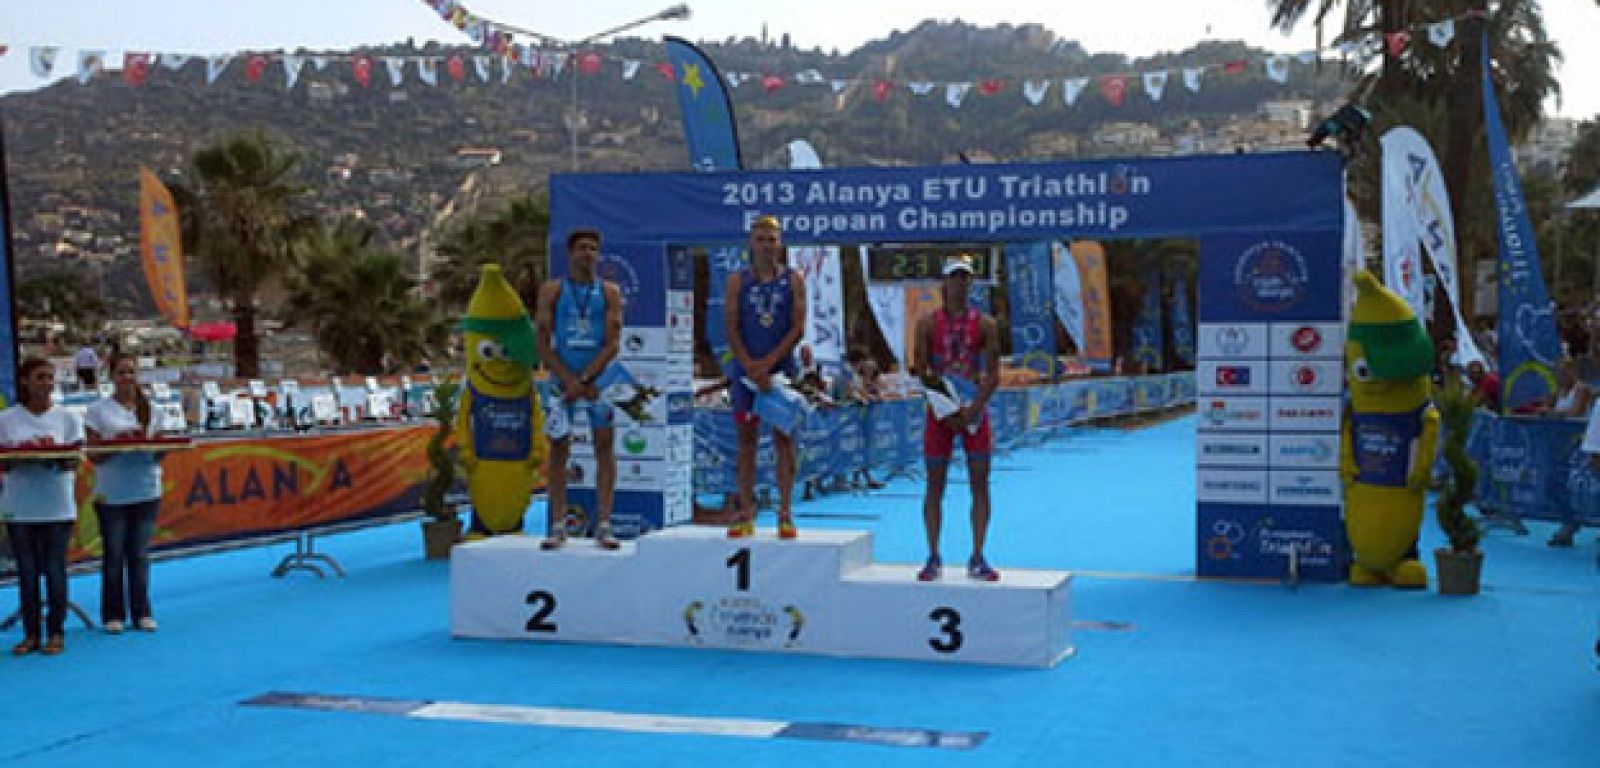 Mario Mola, bronce en el europeo de triatlón